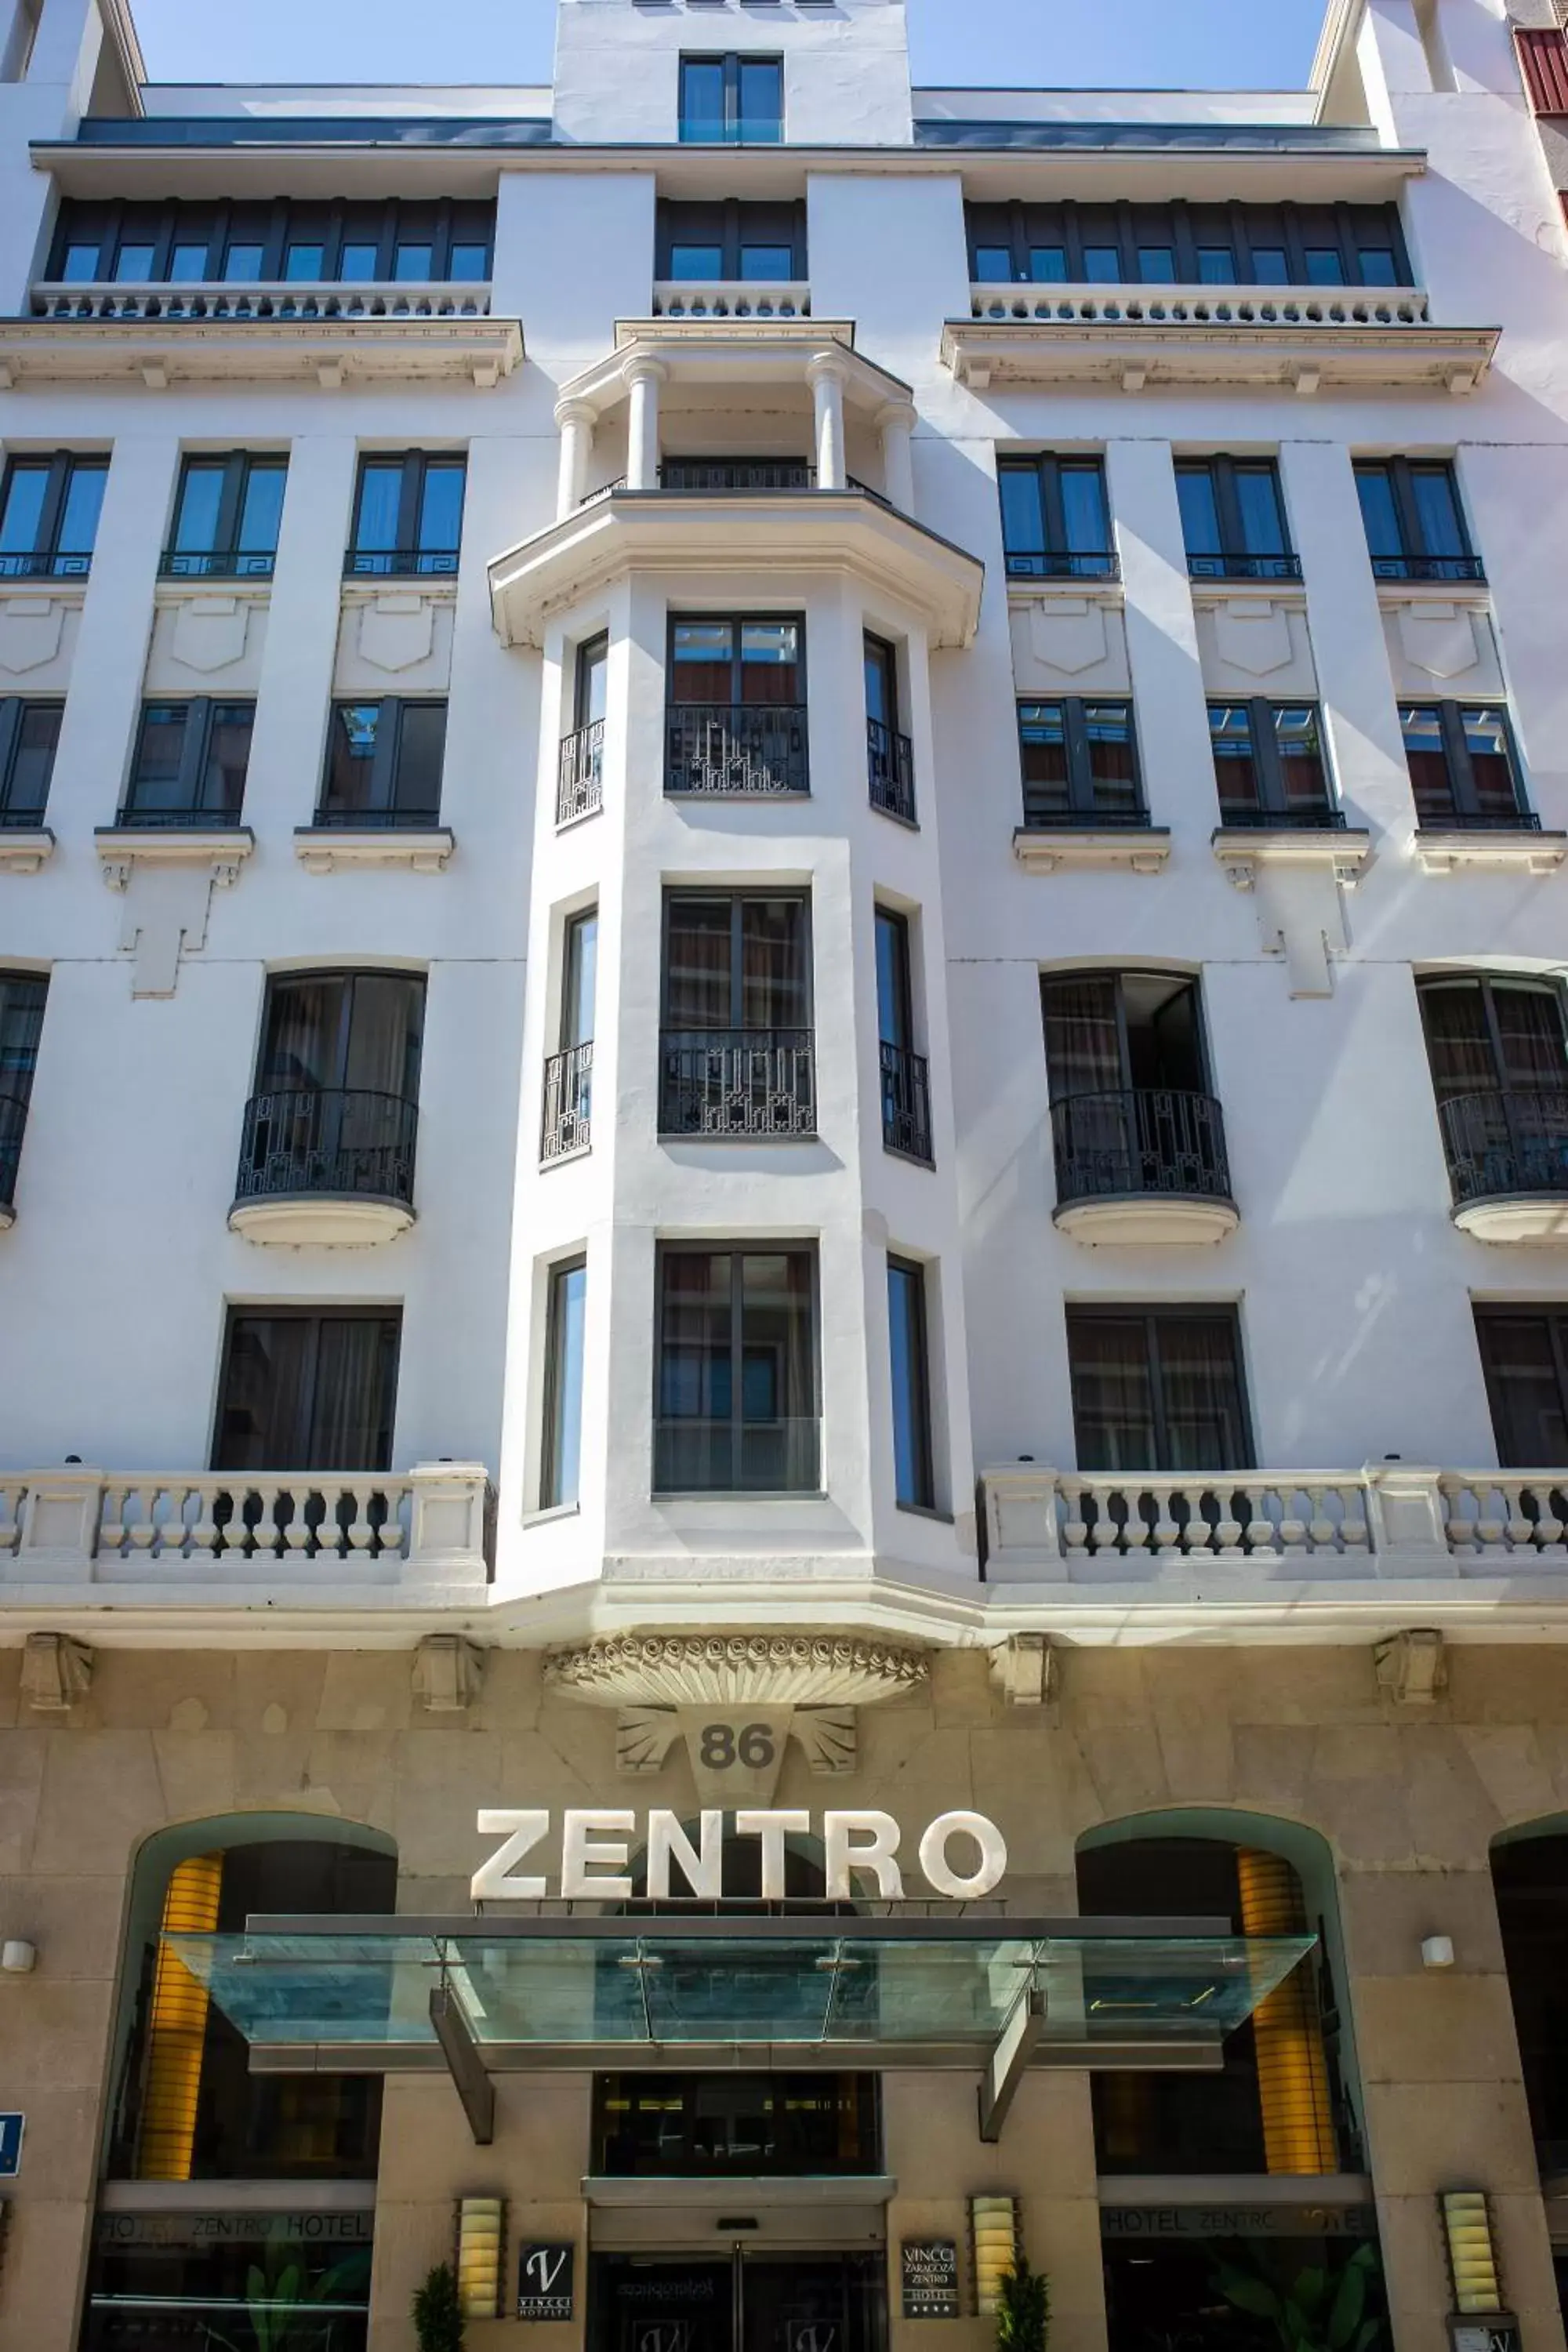 Property building in Vincci Zaragoza Zentro